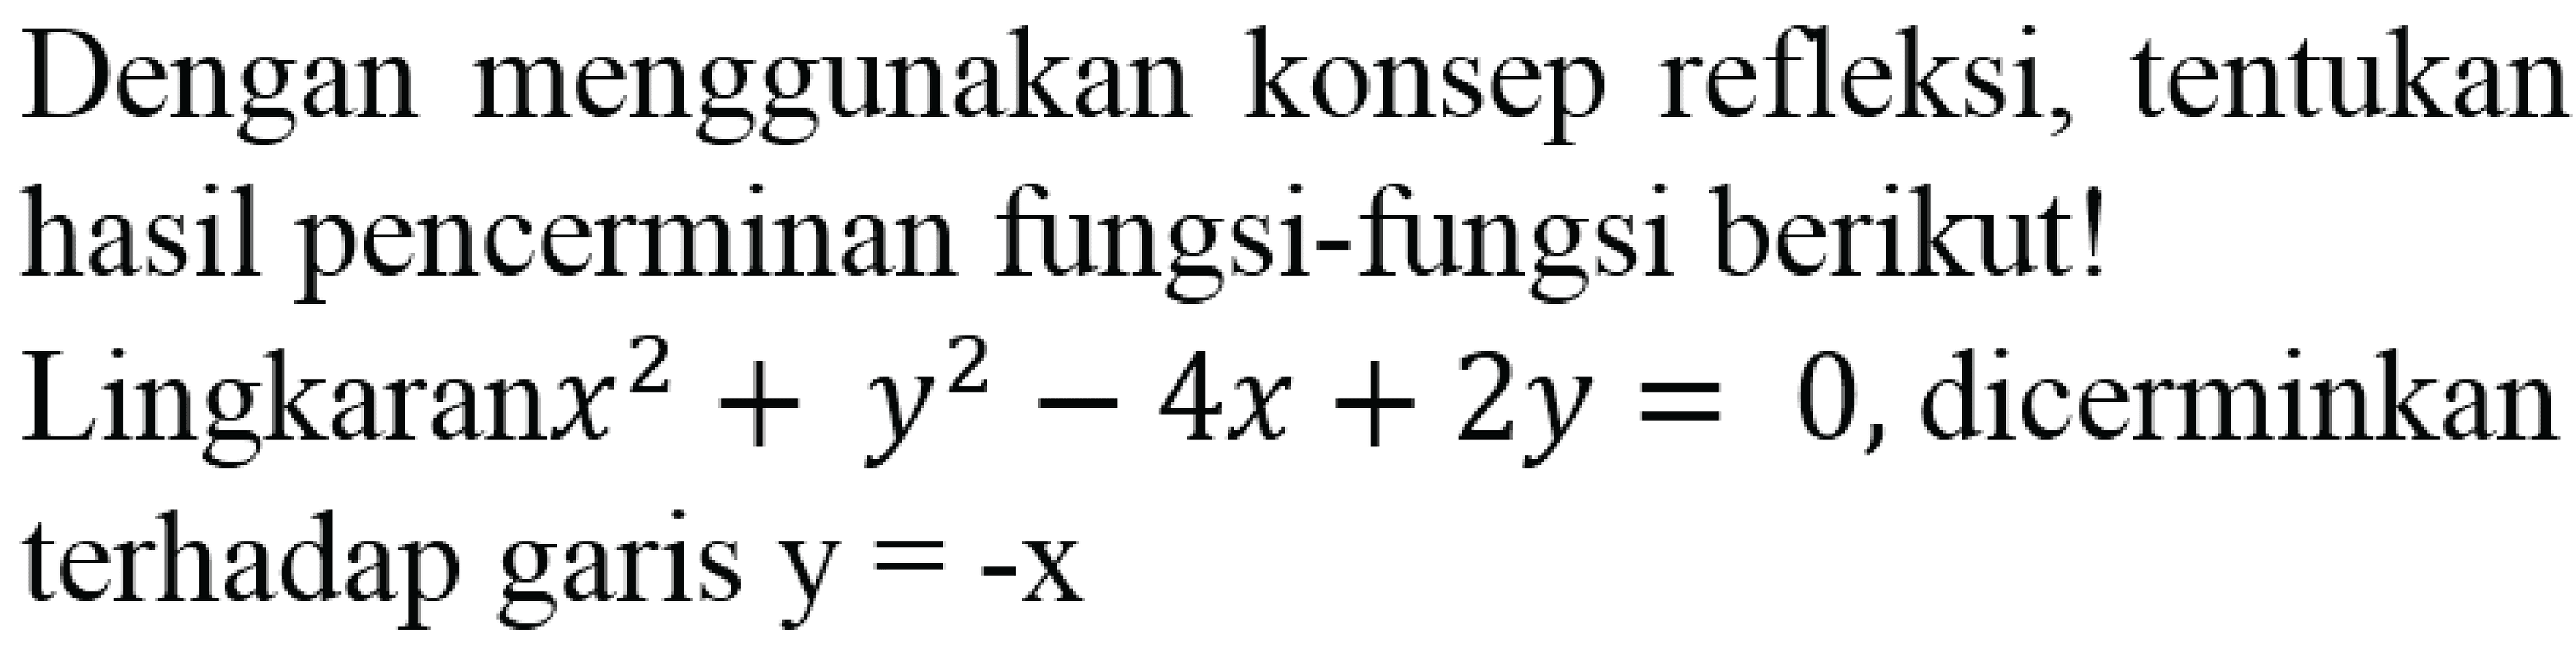 Dengan menggunakan konsep refleksi, tentukan hasil pencerminan fungsi-fungsi berikut!
 Lingkaran x^2+y^2-4x+2 y=0 , dicerminkan terhadap garis  y=-x 